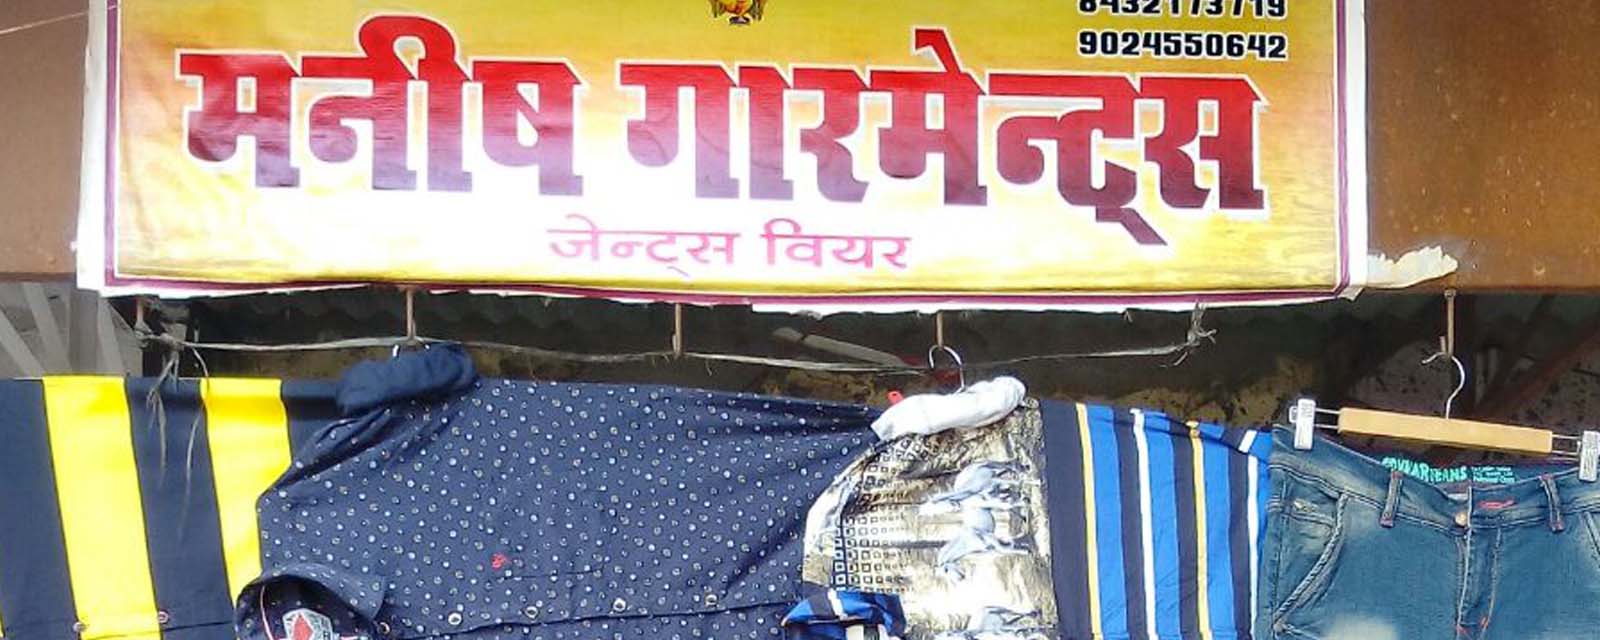 Saroj Devi’s Garment Shop, Sikar, Rajasthan